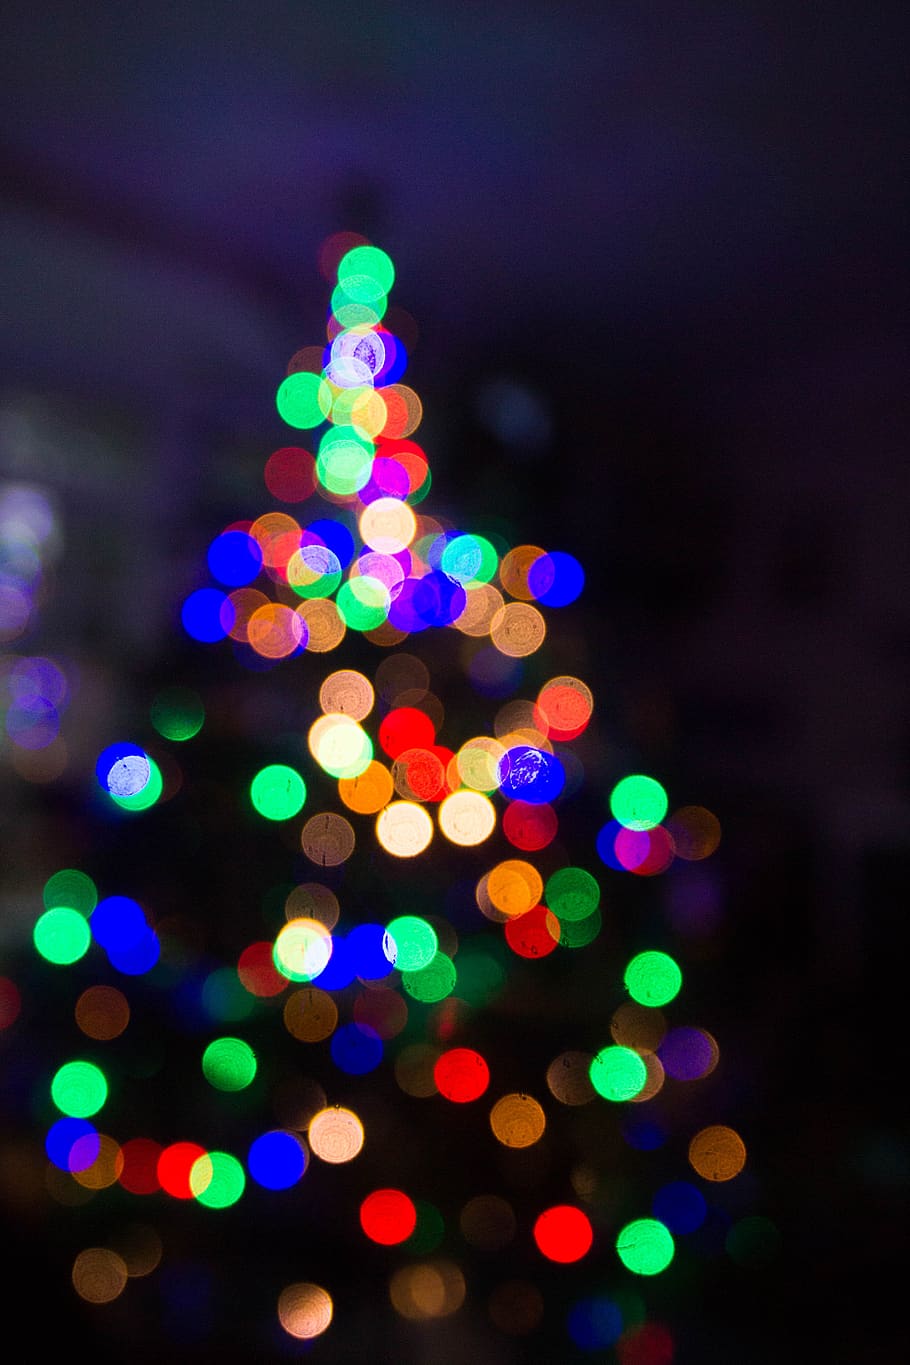 gelap, malam, natal, warna-warni, lampu, penerangan, bokeh, diterangi, hari Natal, dekorasi